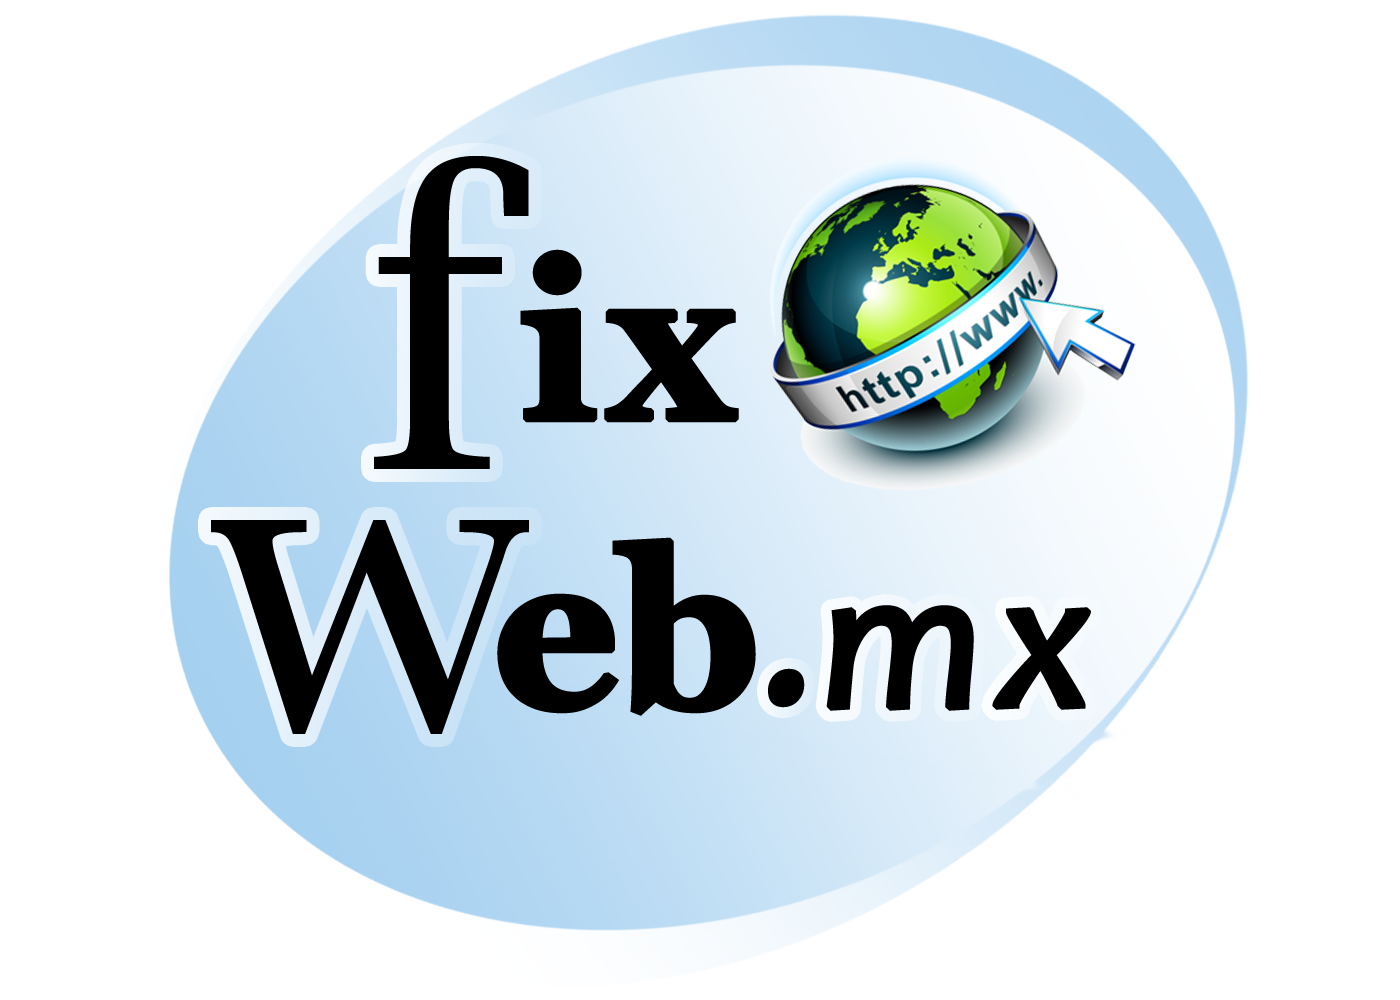 fixweb.mx